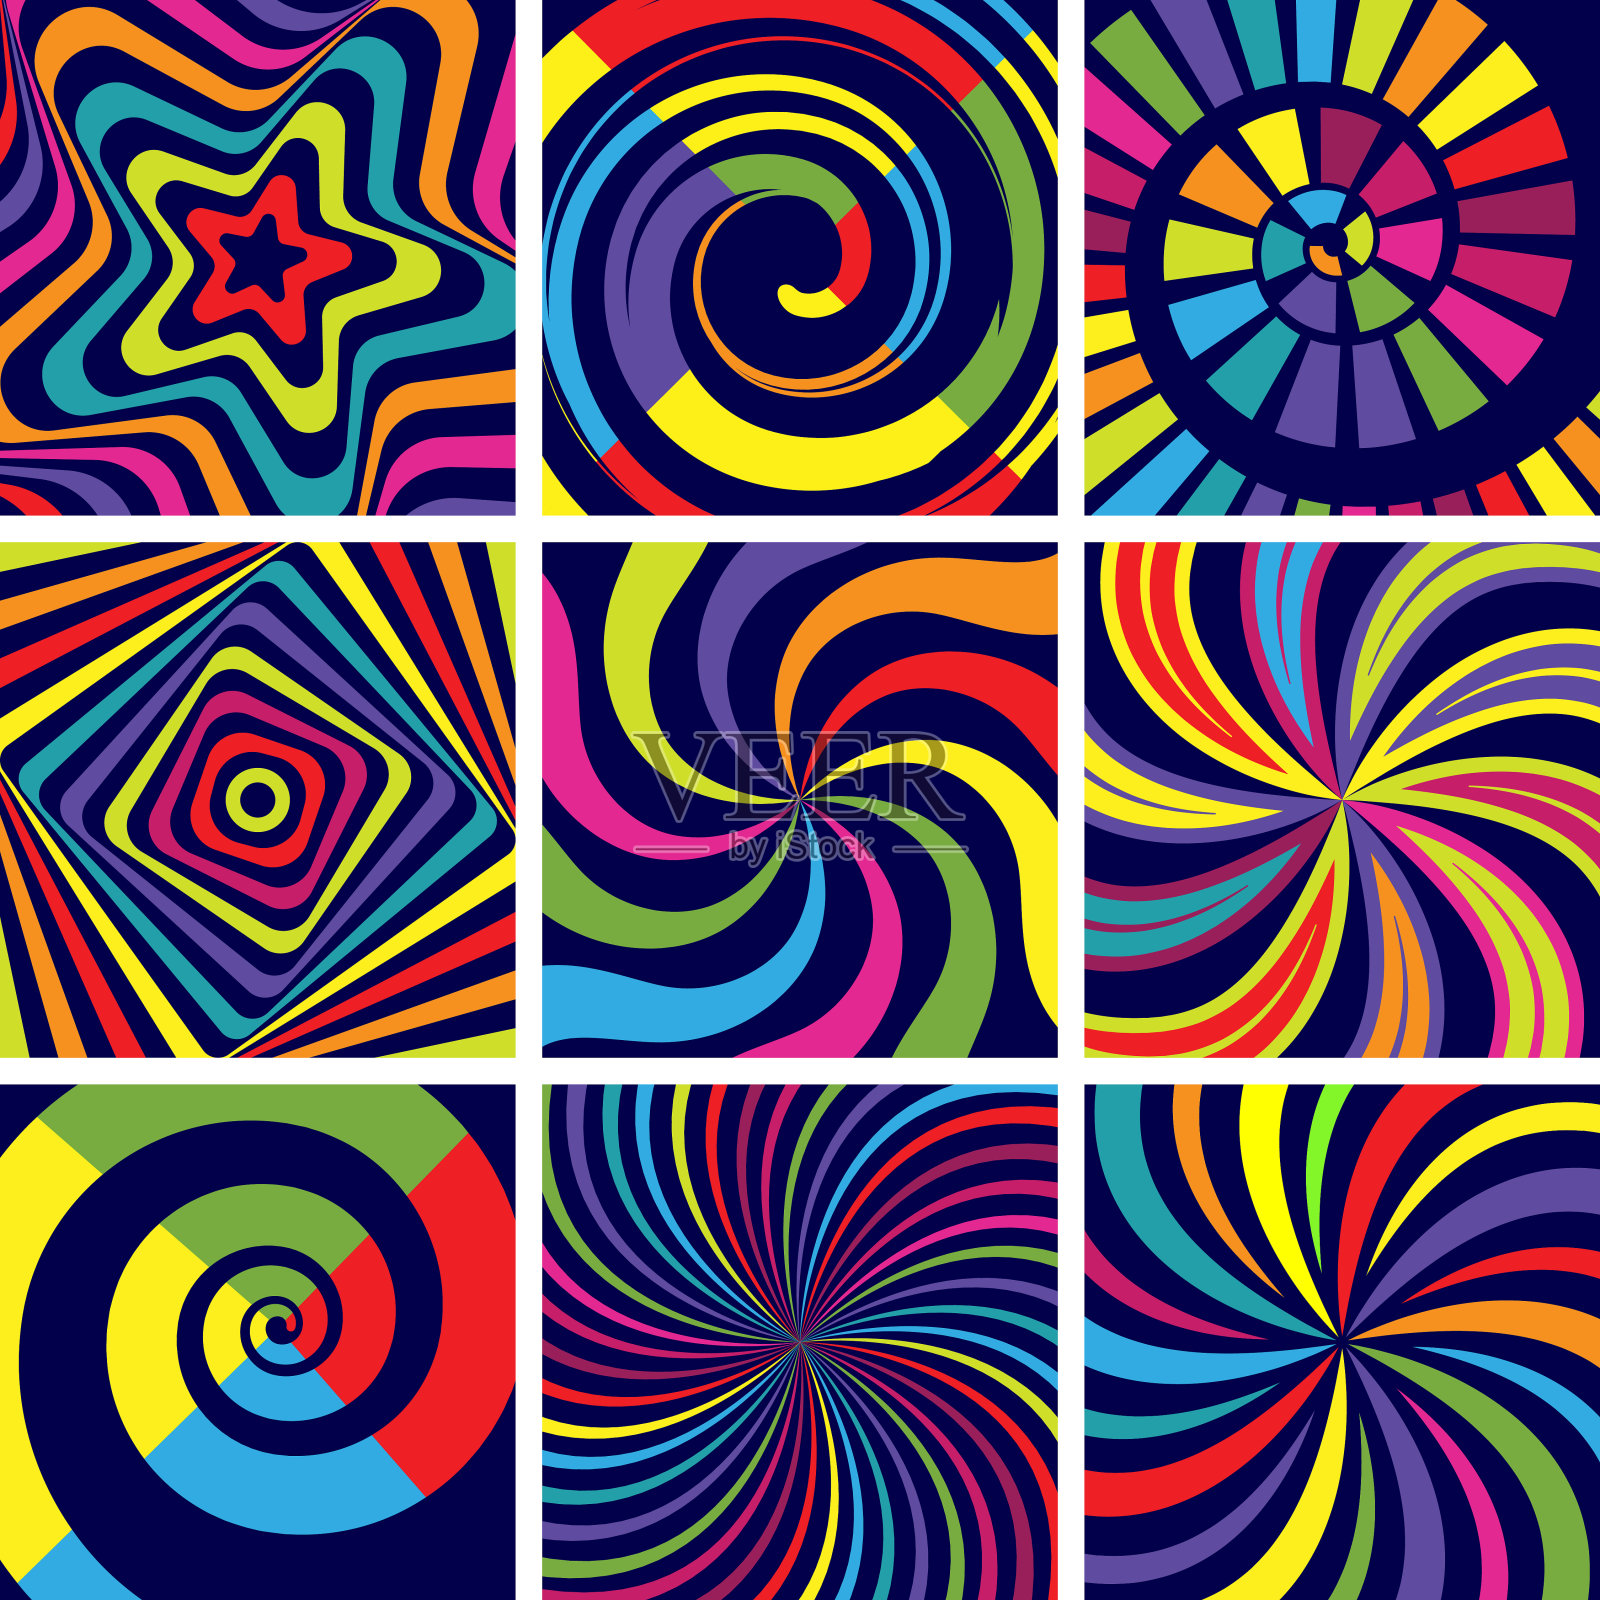 催眠的形状。抽象的圆形螺旋现代背景矢量壁纸心理诊所插画图片素材